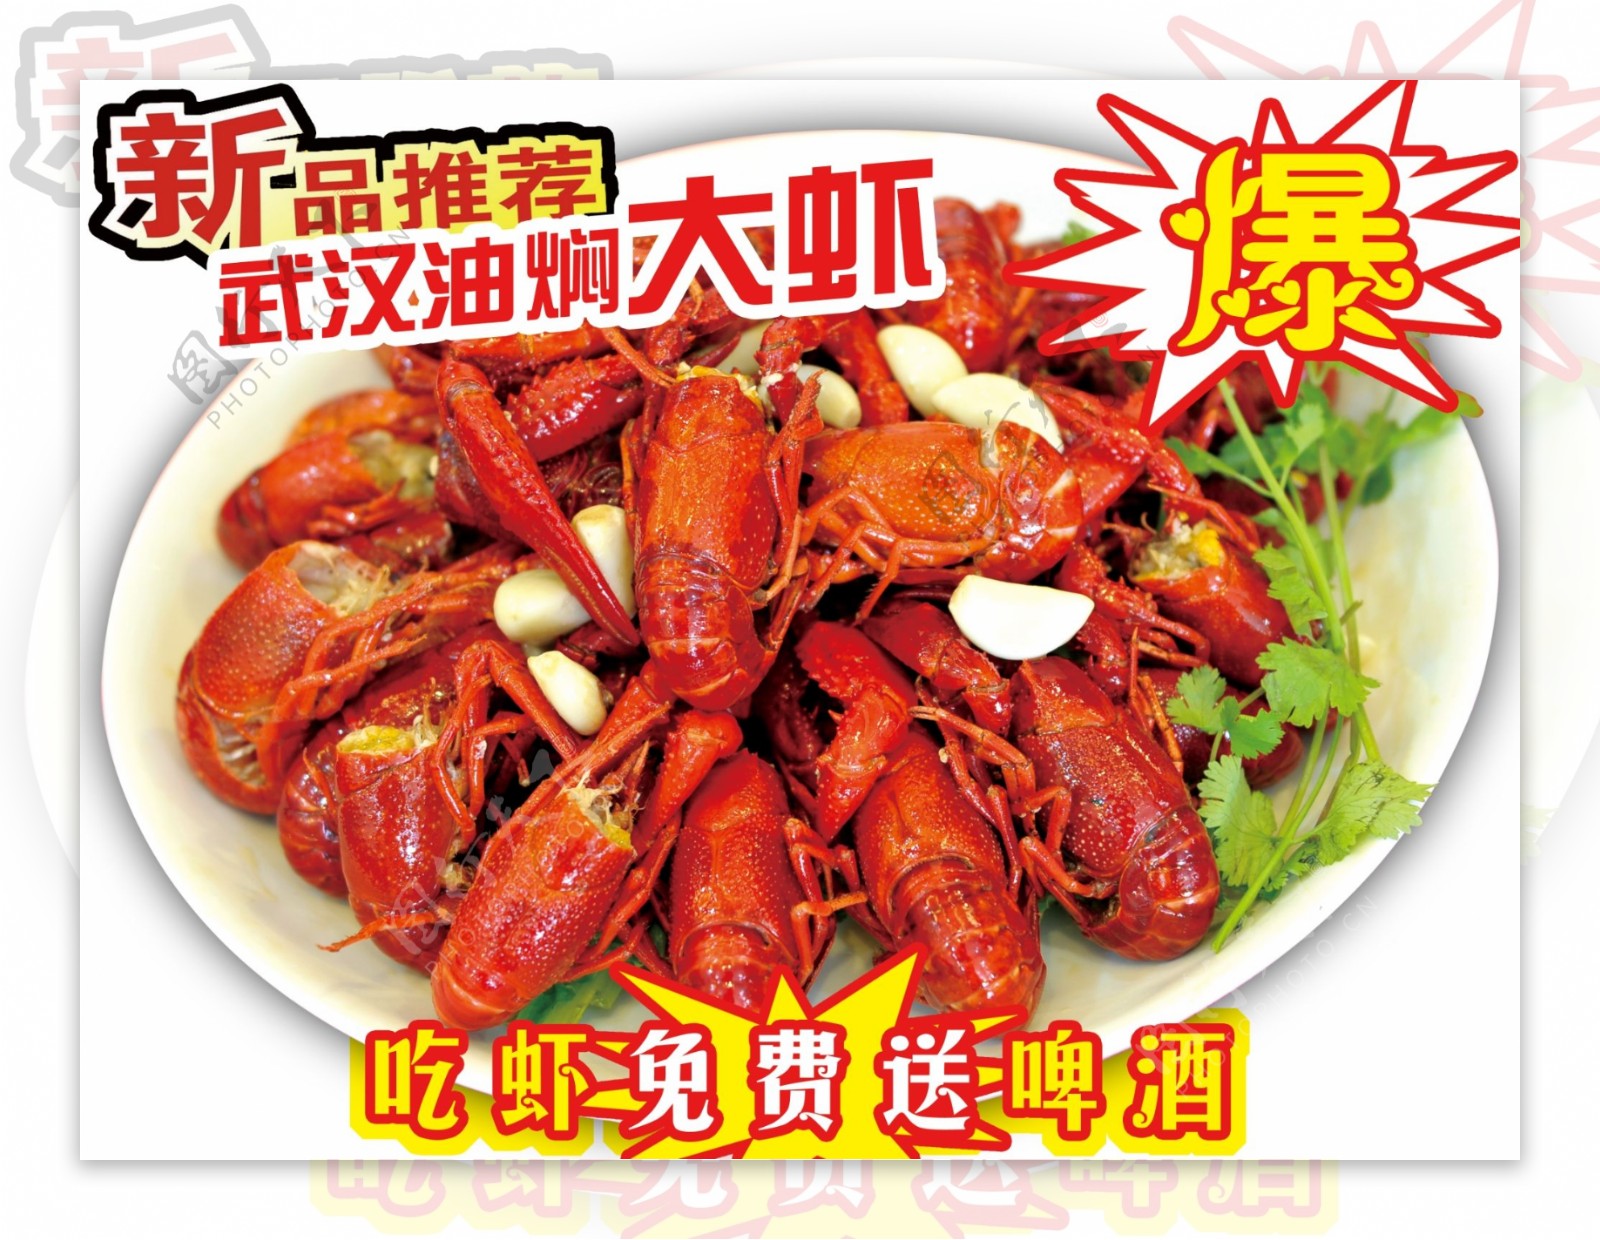 武汉油焖大虾图片